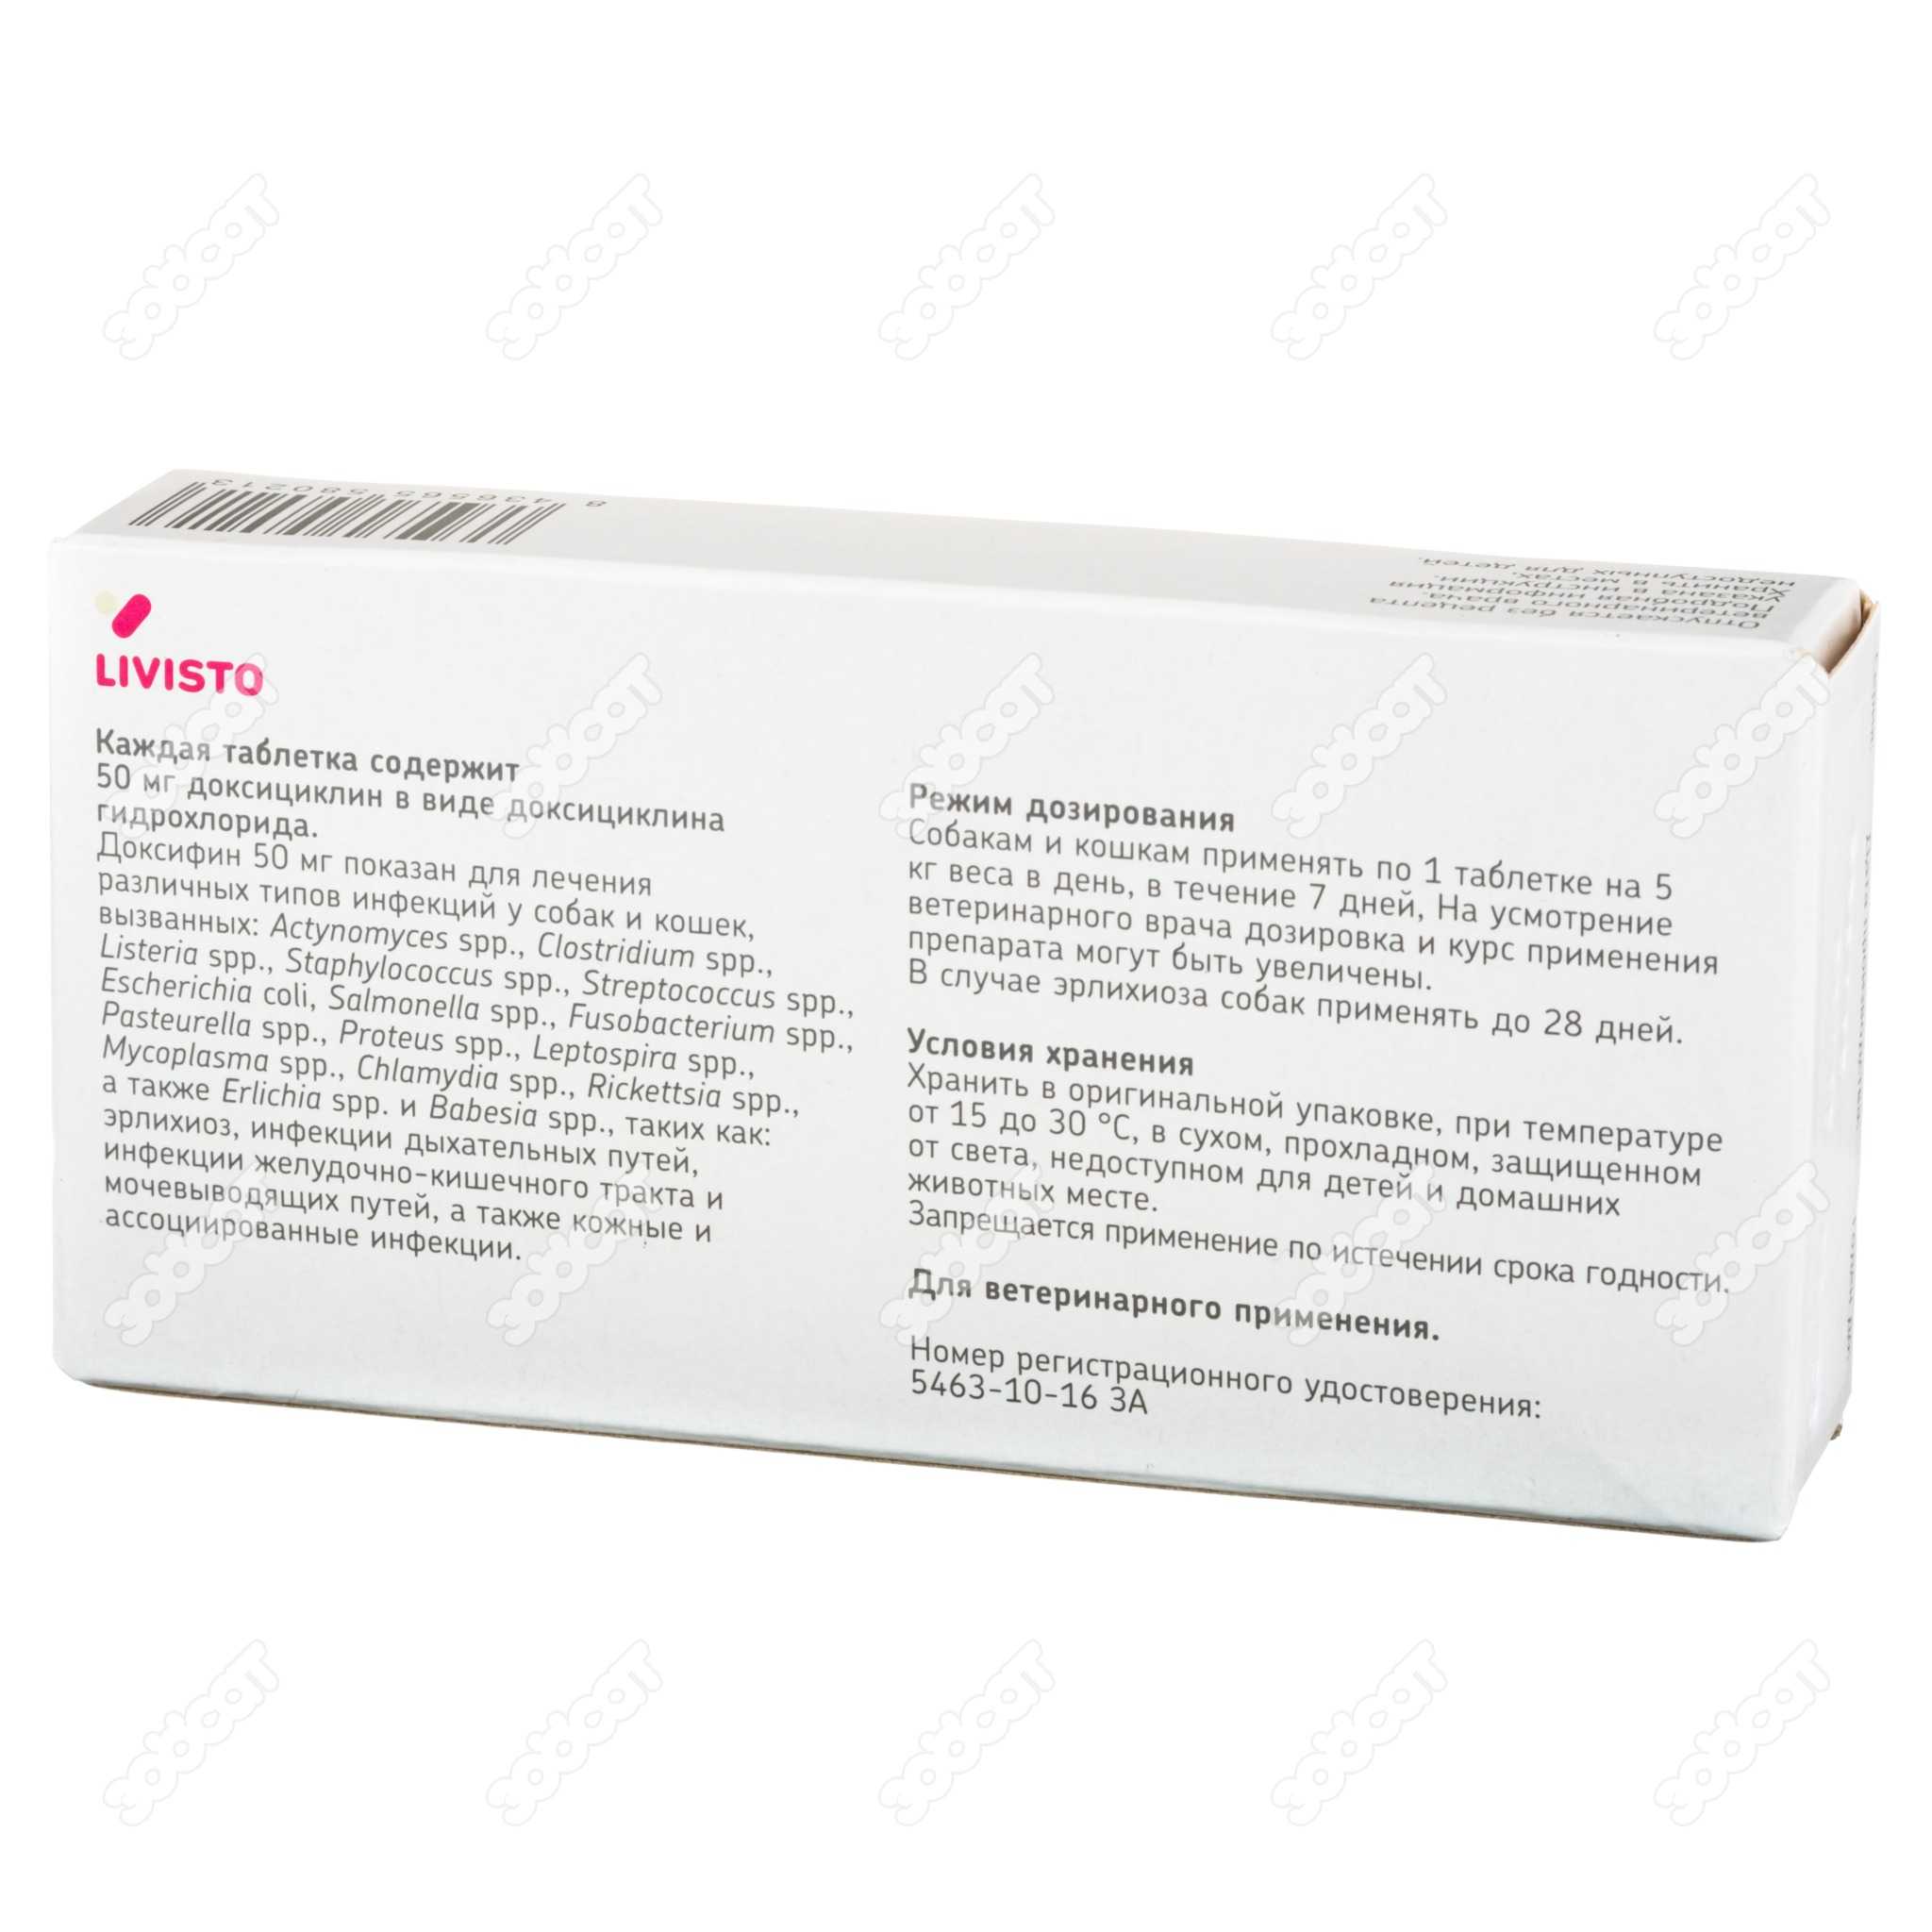 Дюспаталин (duspatalin) 135 мг - инструкция по применению препарата: как пить и сколько принимать